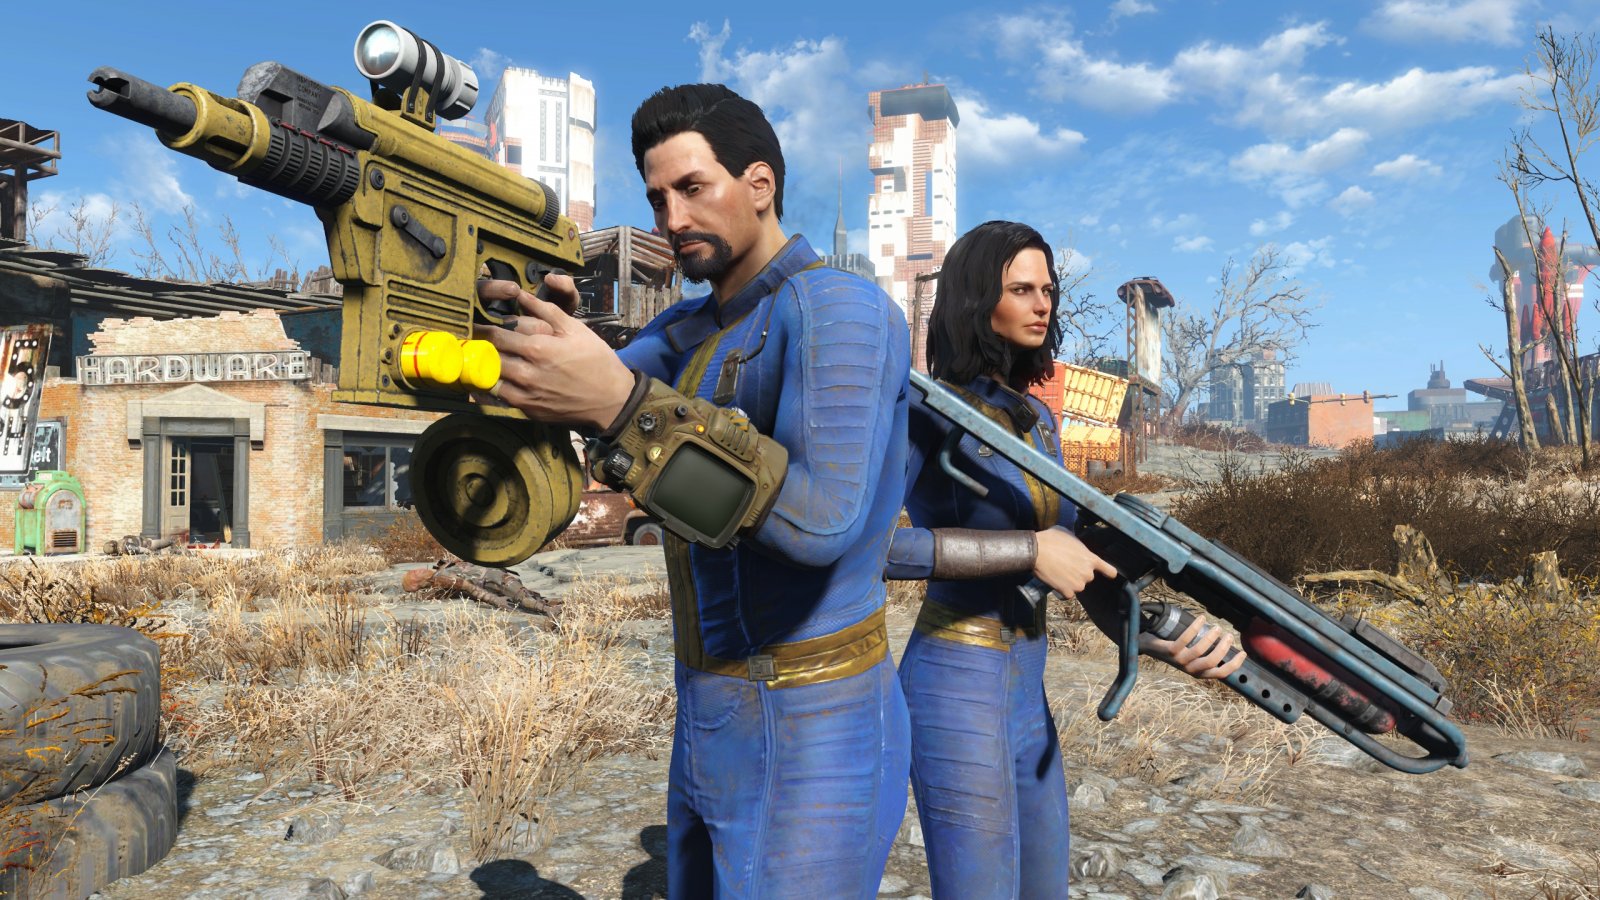 Ci sarà un Fallout ambientato fuori dagli USA? Todd Howard non pare convinto dall'idea